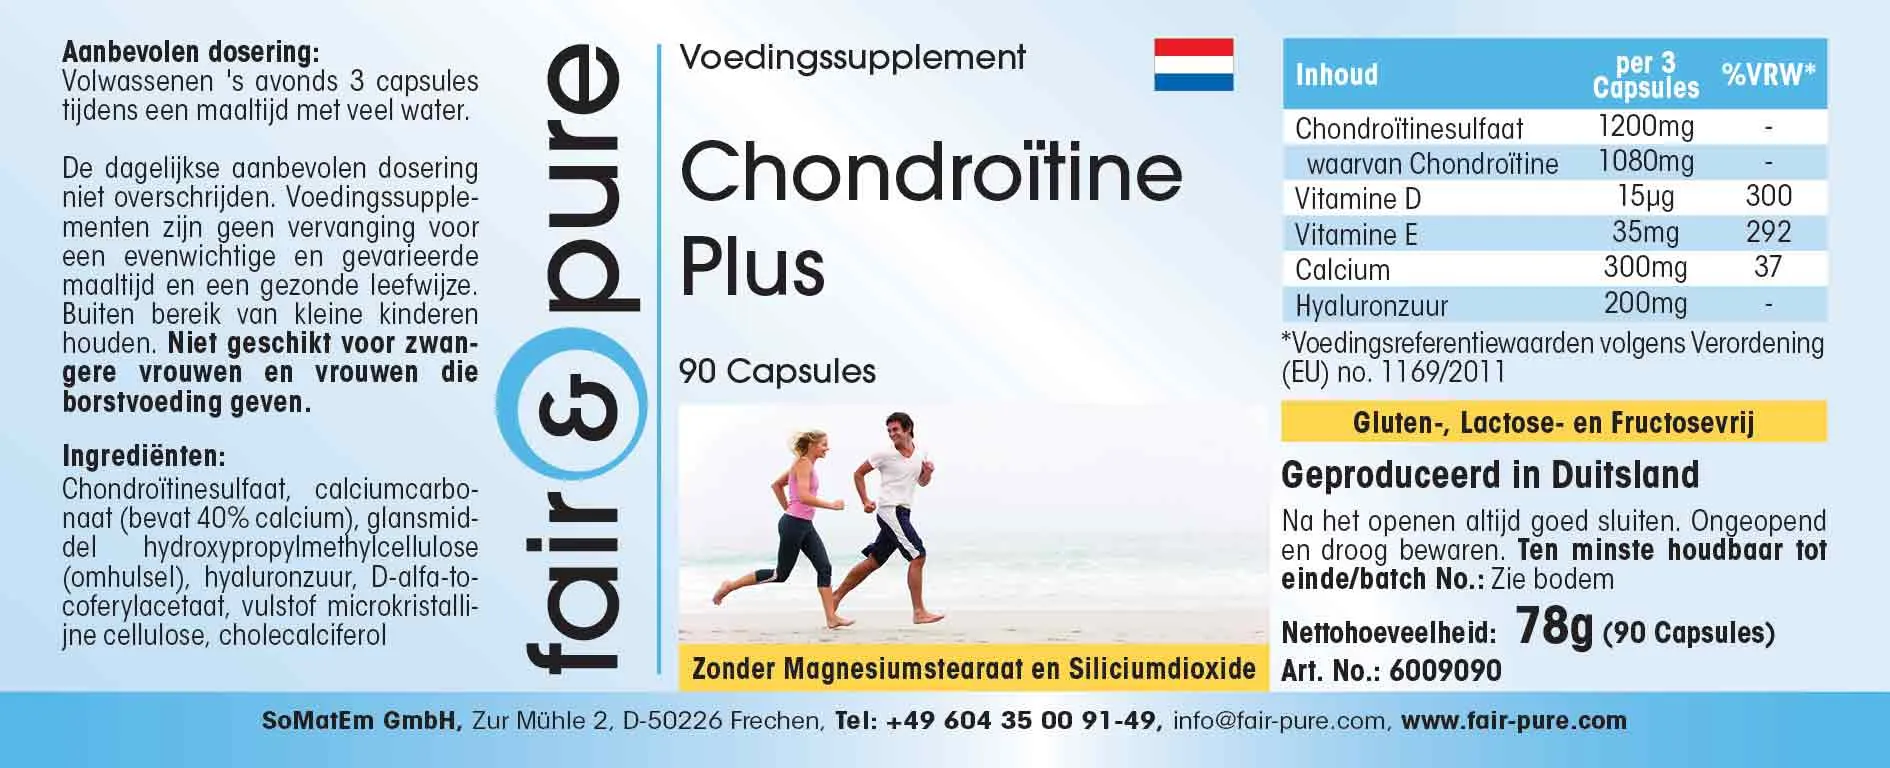 Chondroitin Plus